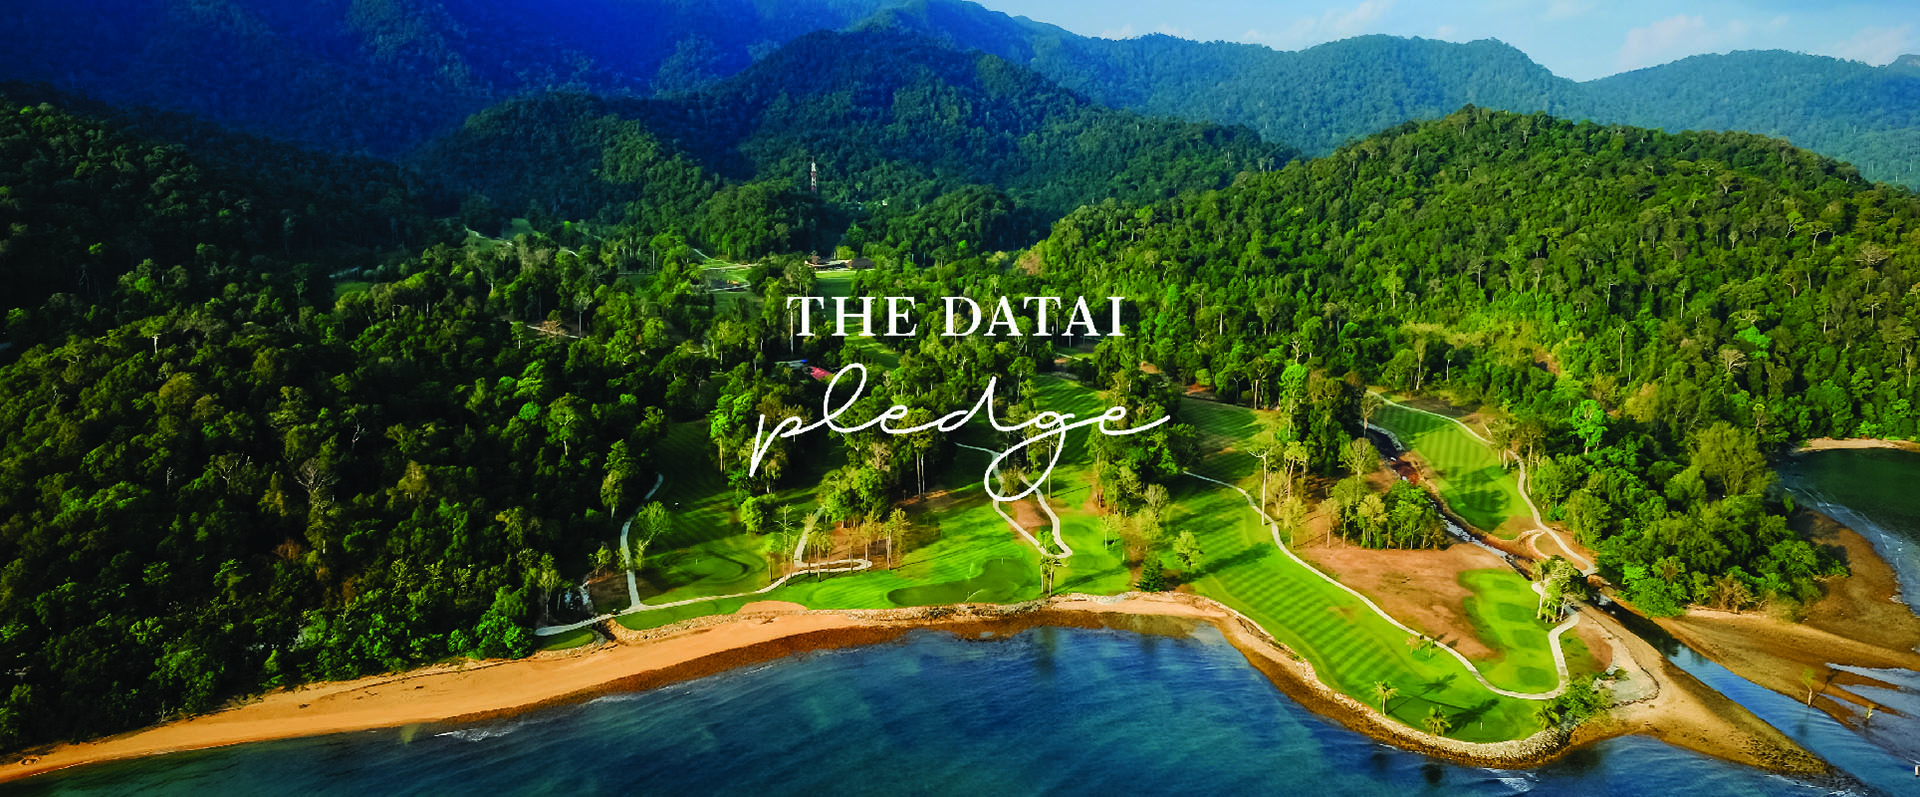 The Els Club Teluk Datai The Datai Pledge